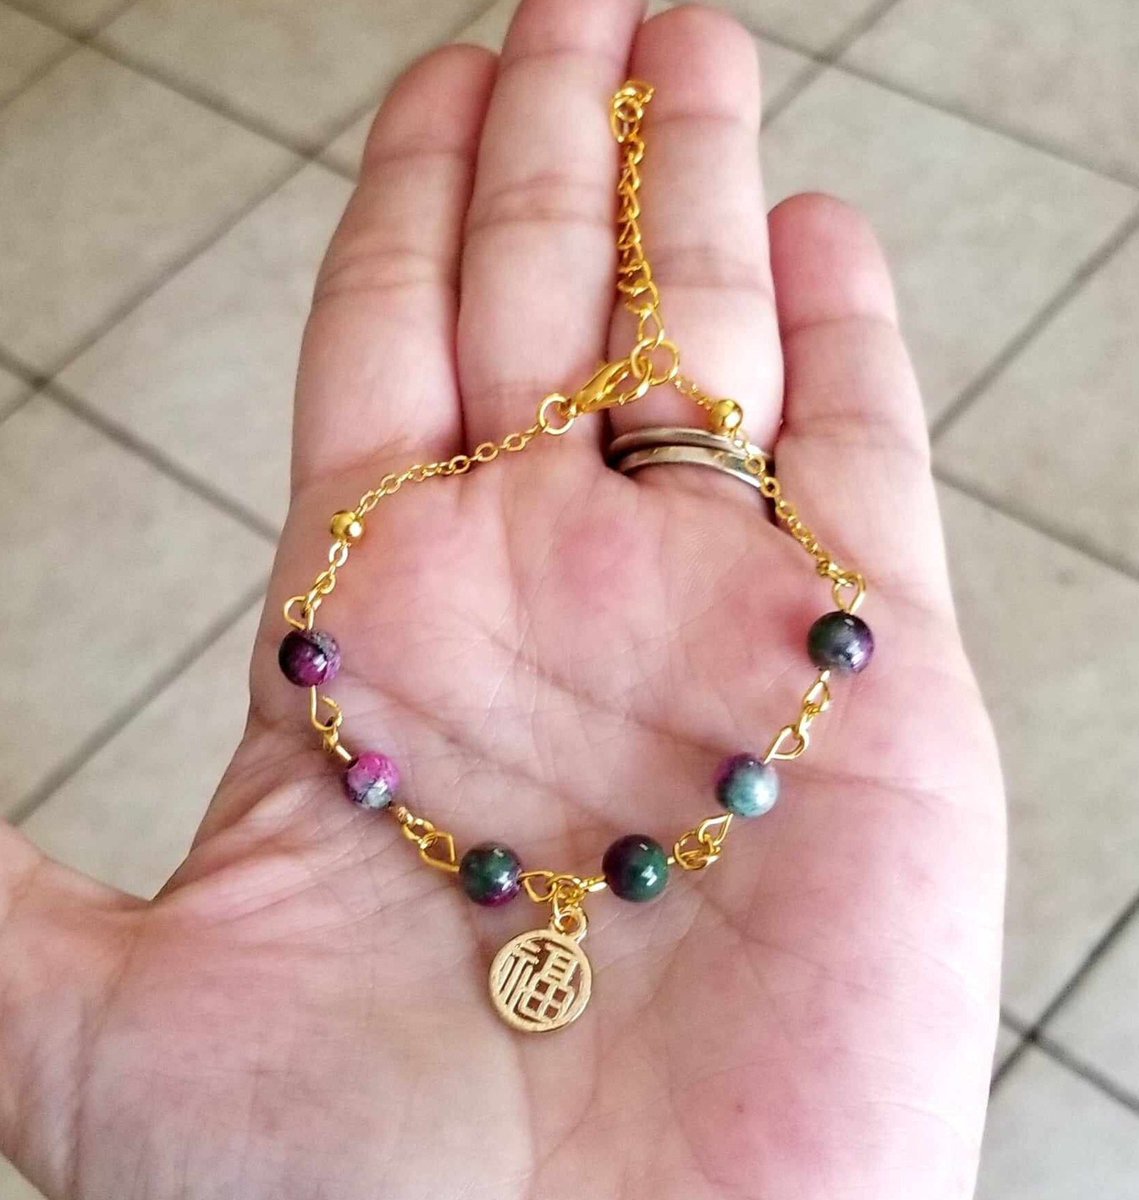 Persian Jade Bracelet 
#jewelry #bracelet #beadedbracelet #jade #jadebracelet #jadejewelry #handmade #handmadejewelry #handmadegift #giftsforher #giftideas #gifts #mothersday #mothersdaygifts #etsy 

simplychicbyangela.etsy.com/listing/164915…